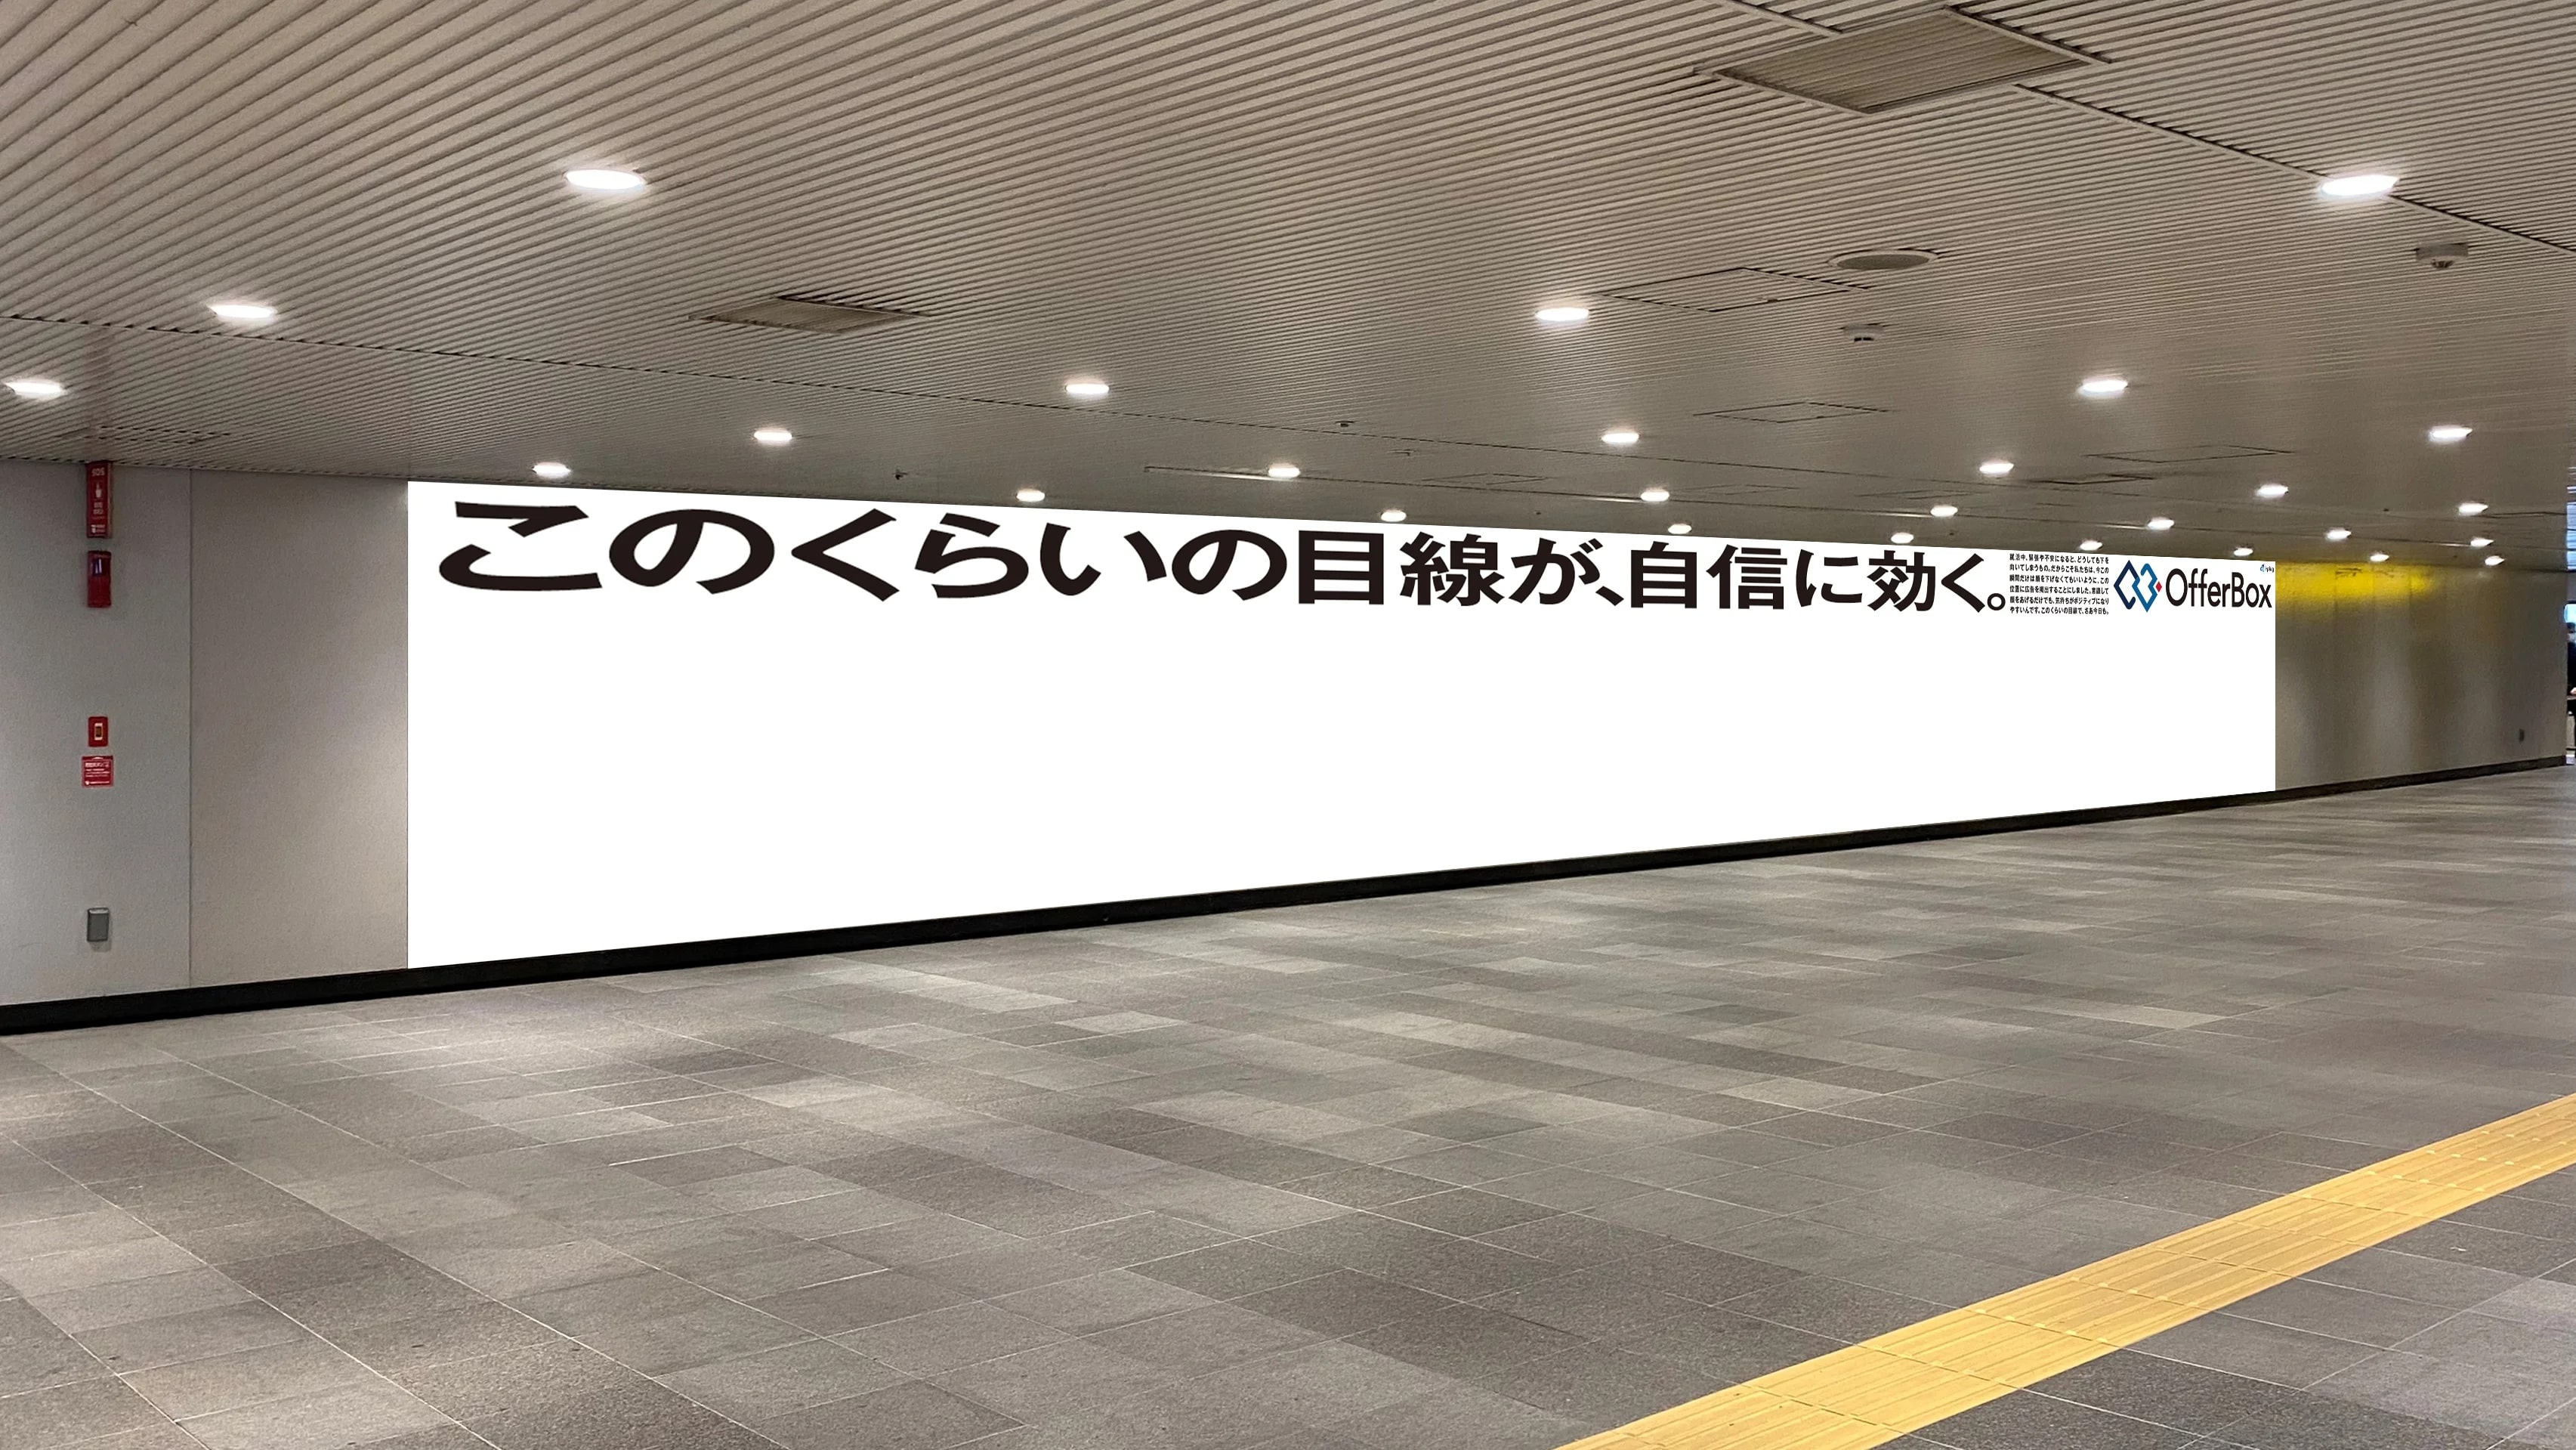 気持ちが前向きになる「視線が上がる広告」が登場―就活生に向け渋谷駅や首都圏大学周辺で掲示